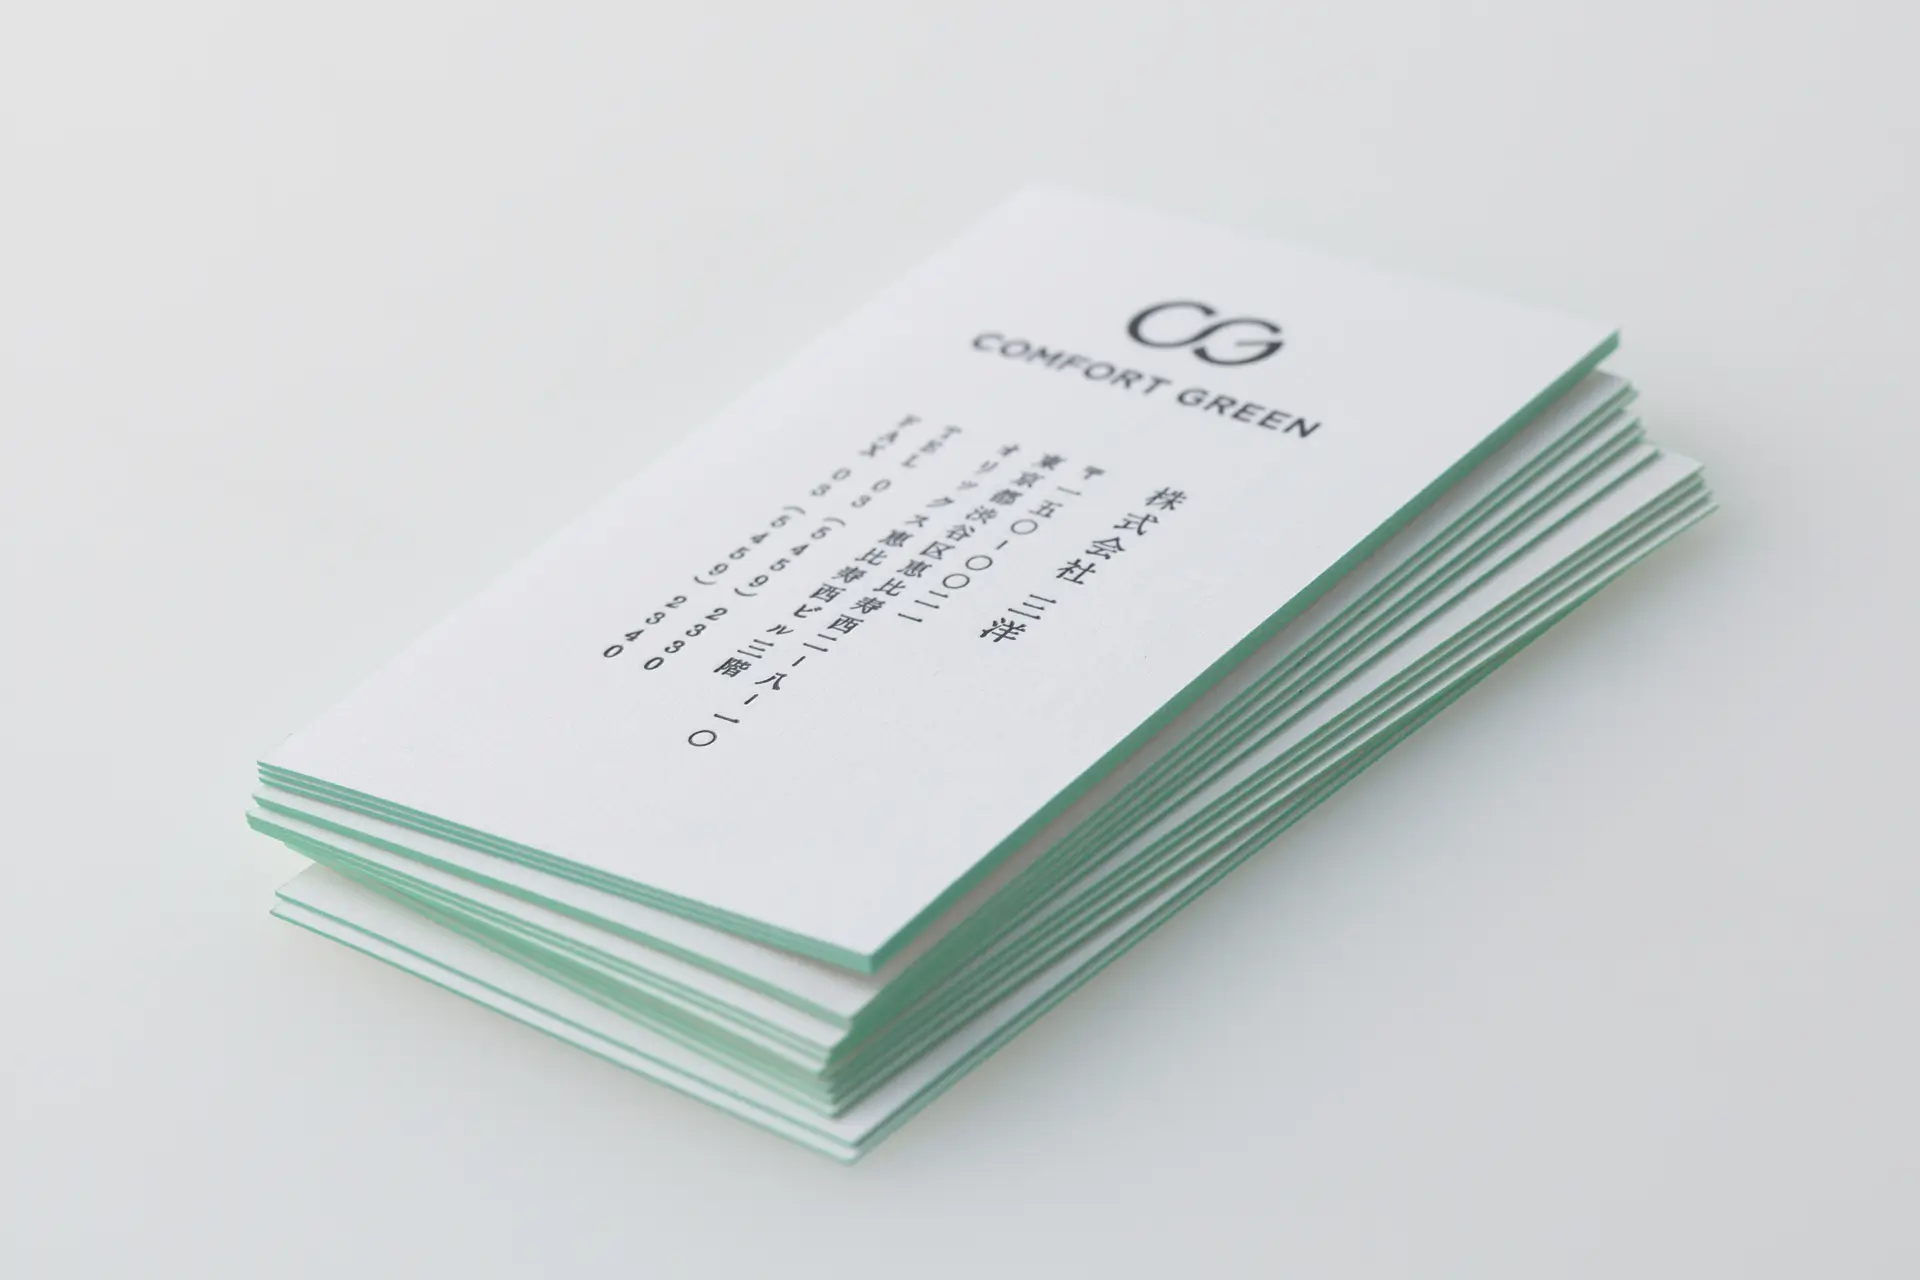 Comfort Green - Business Card